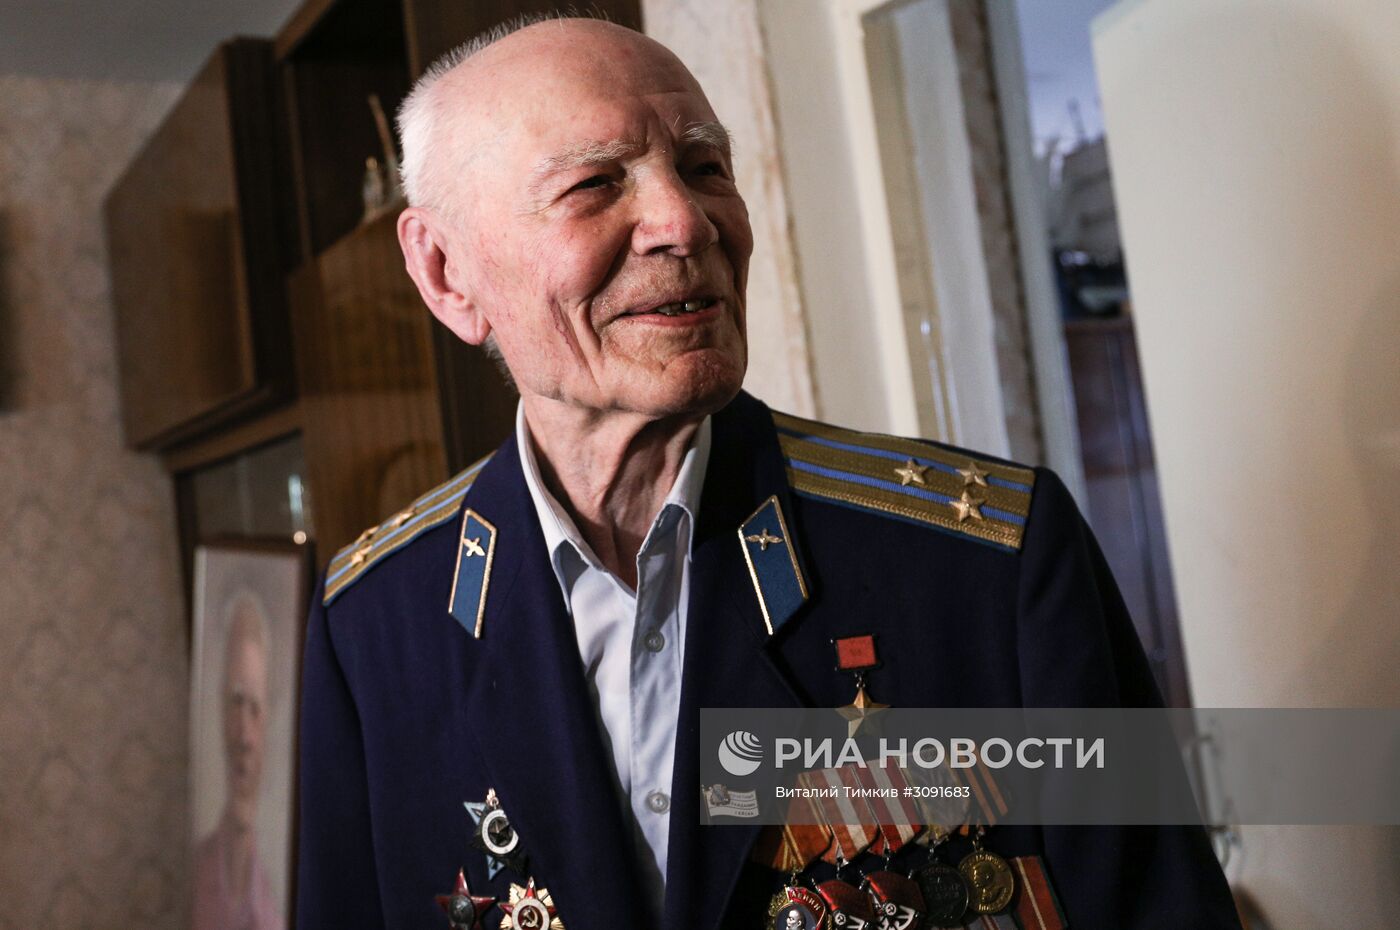 Ветеран Великой Отечественной войны Павел Андреевич Галкин